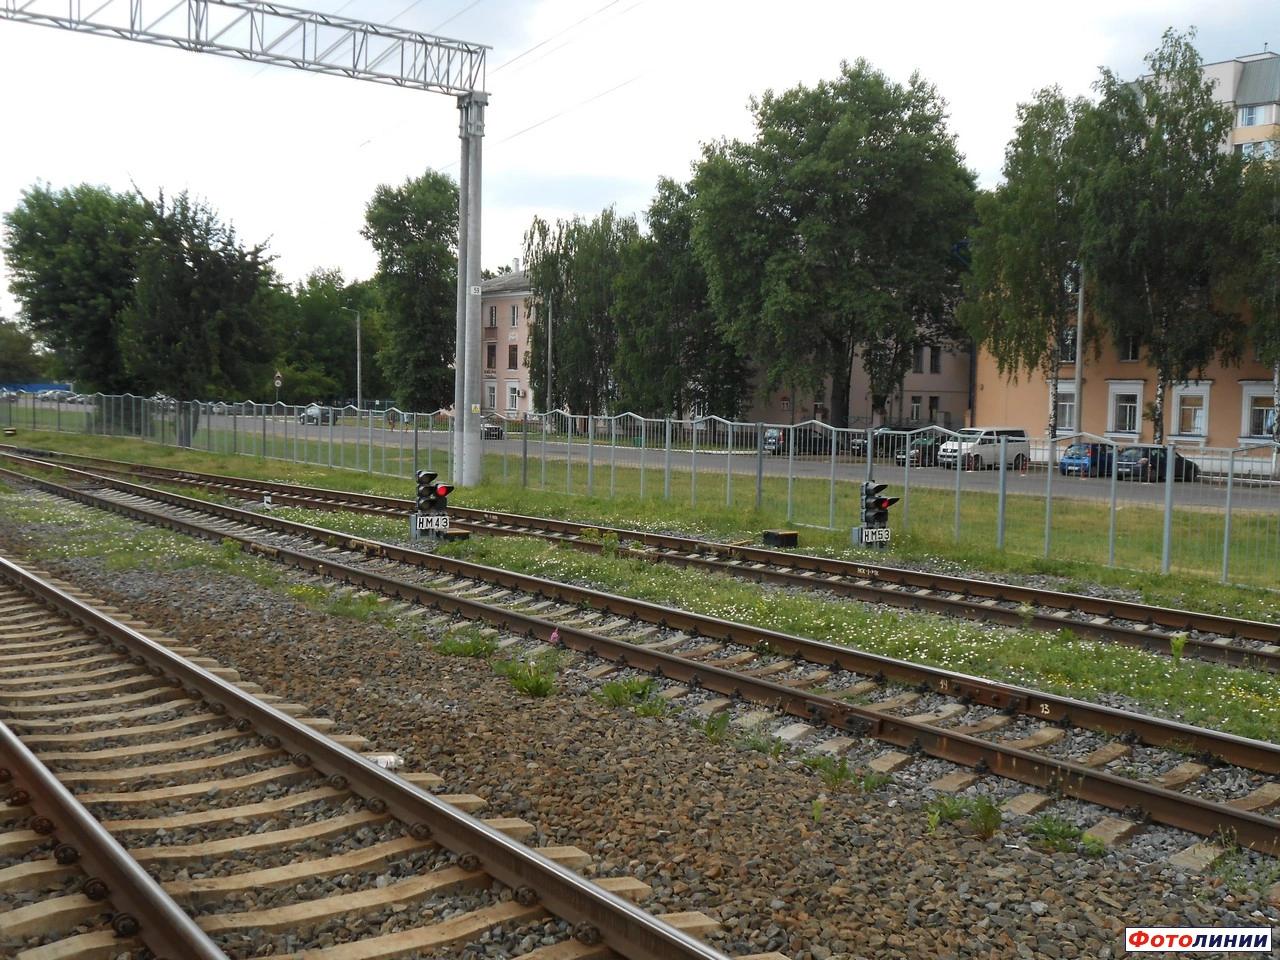 Маршрутные светофоры НМ43 и НМ53 в парке на месте бывшей станции Заводская